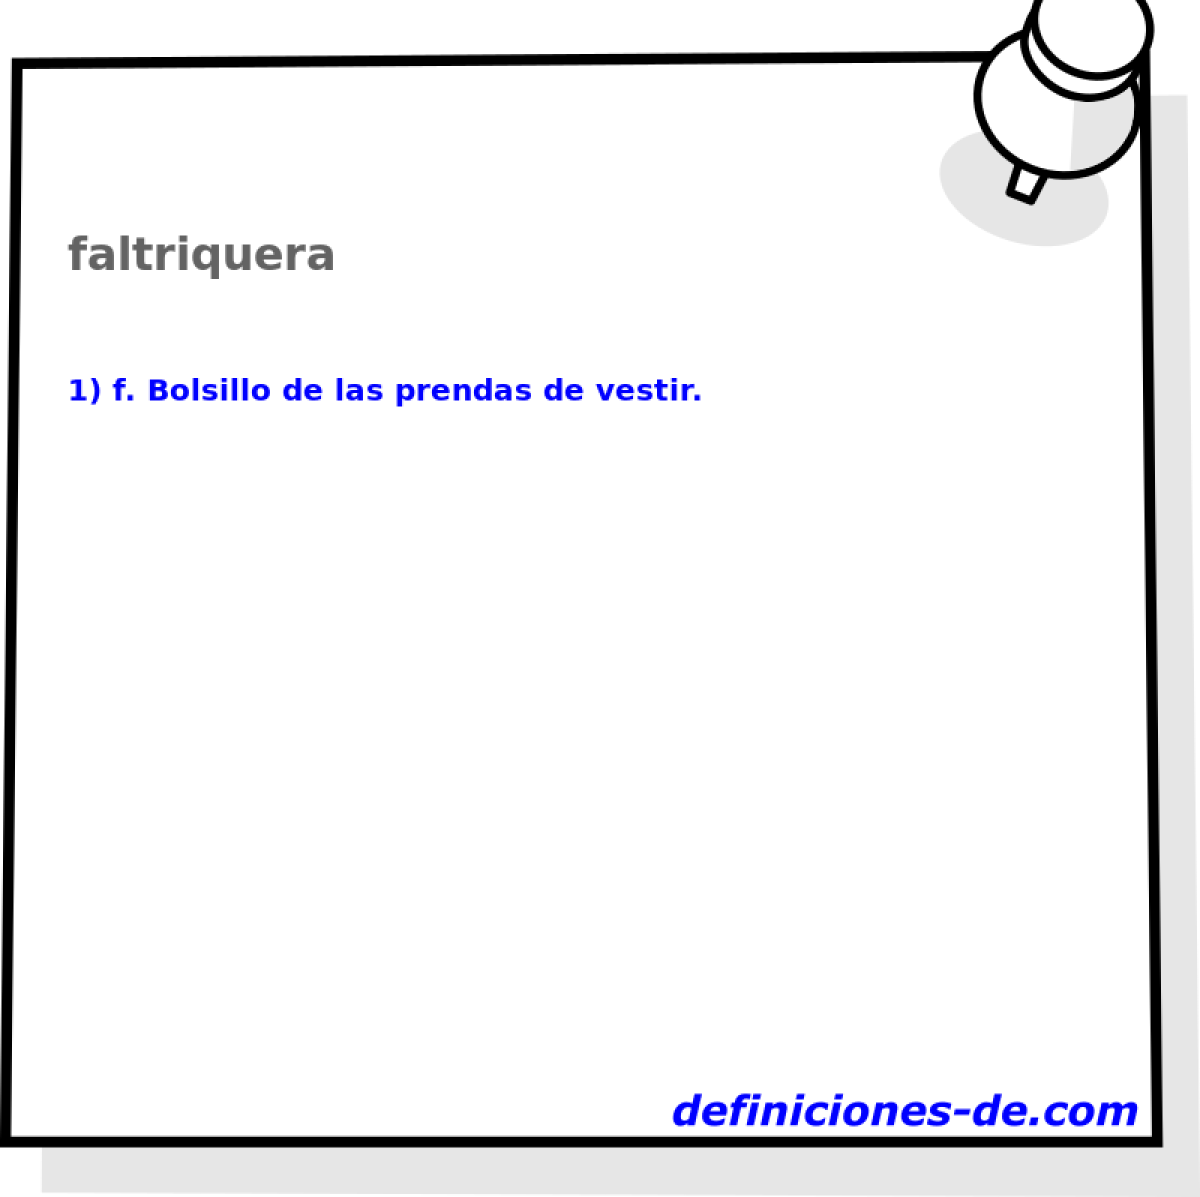 faltriquera 